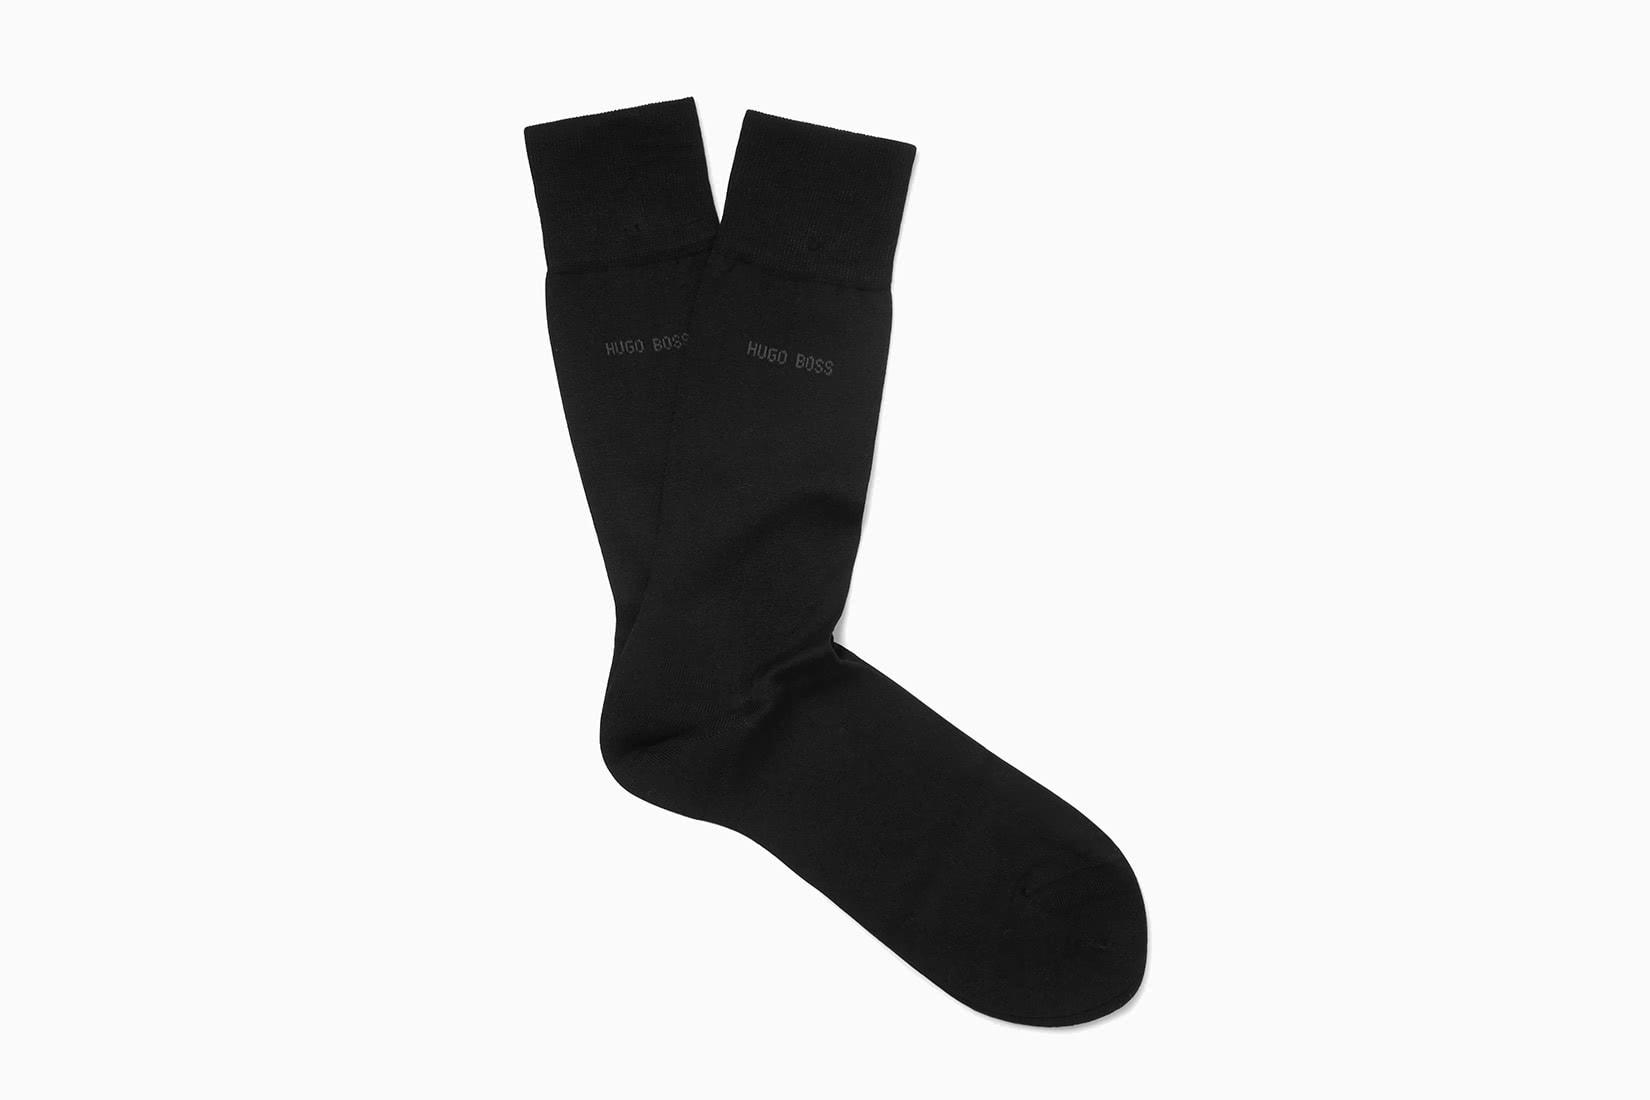 best socks men dress hugo boss review - Luxe Digital